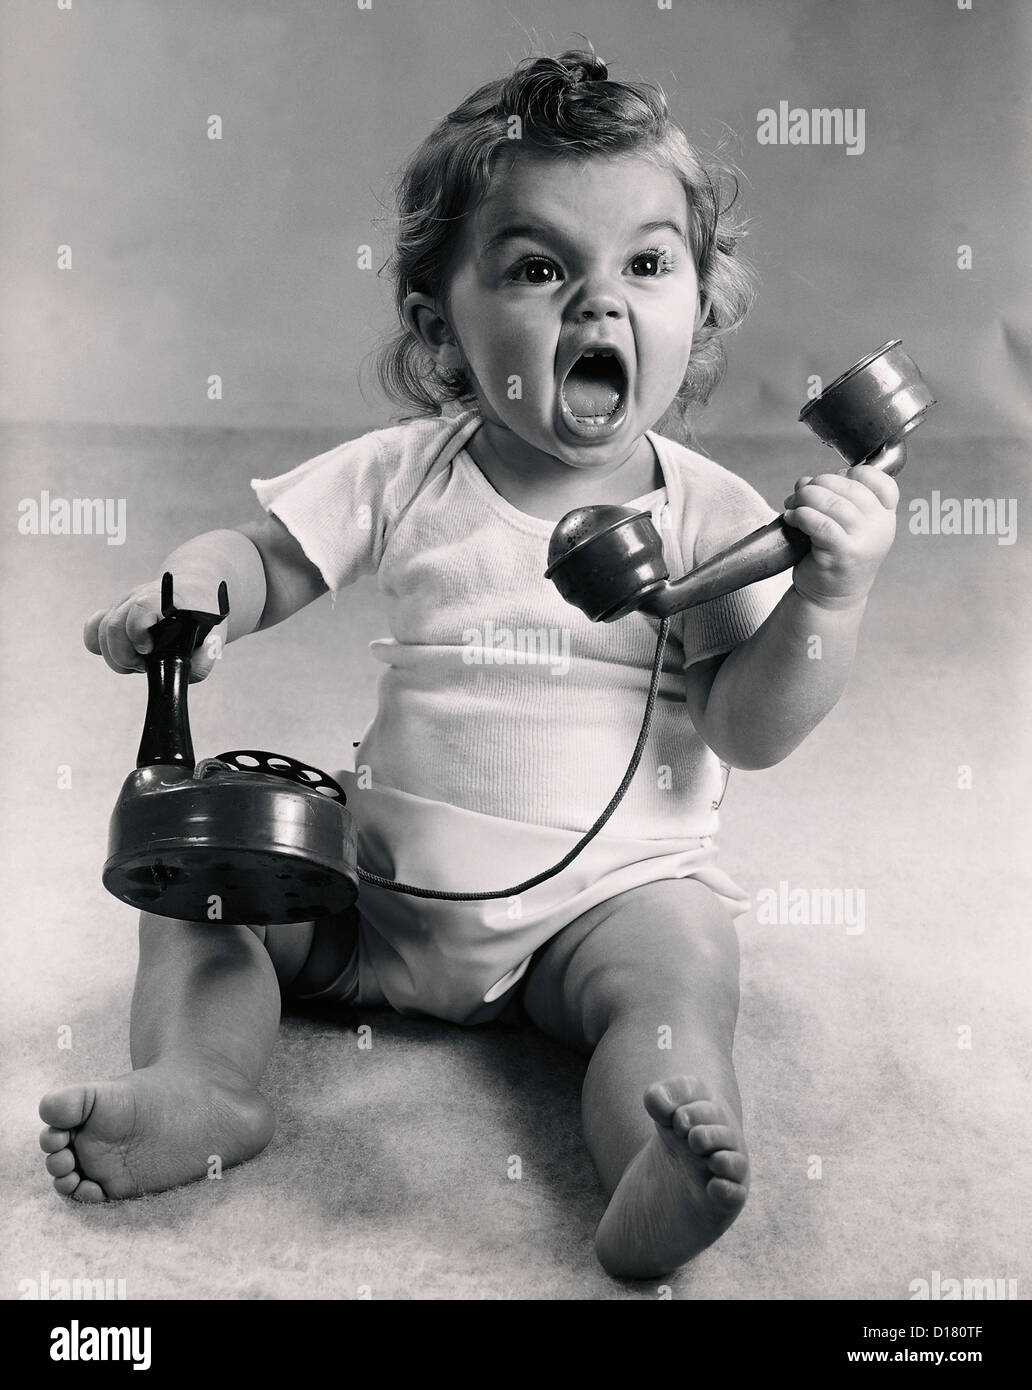 Foto d'epoca del neonato urlando con telefono Foto Stock